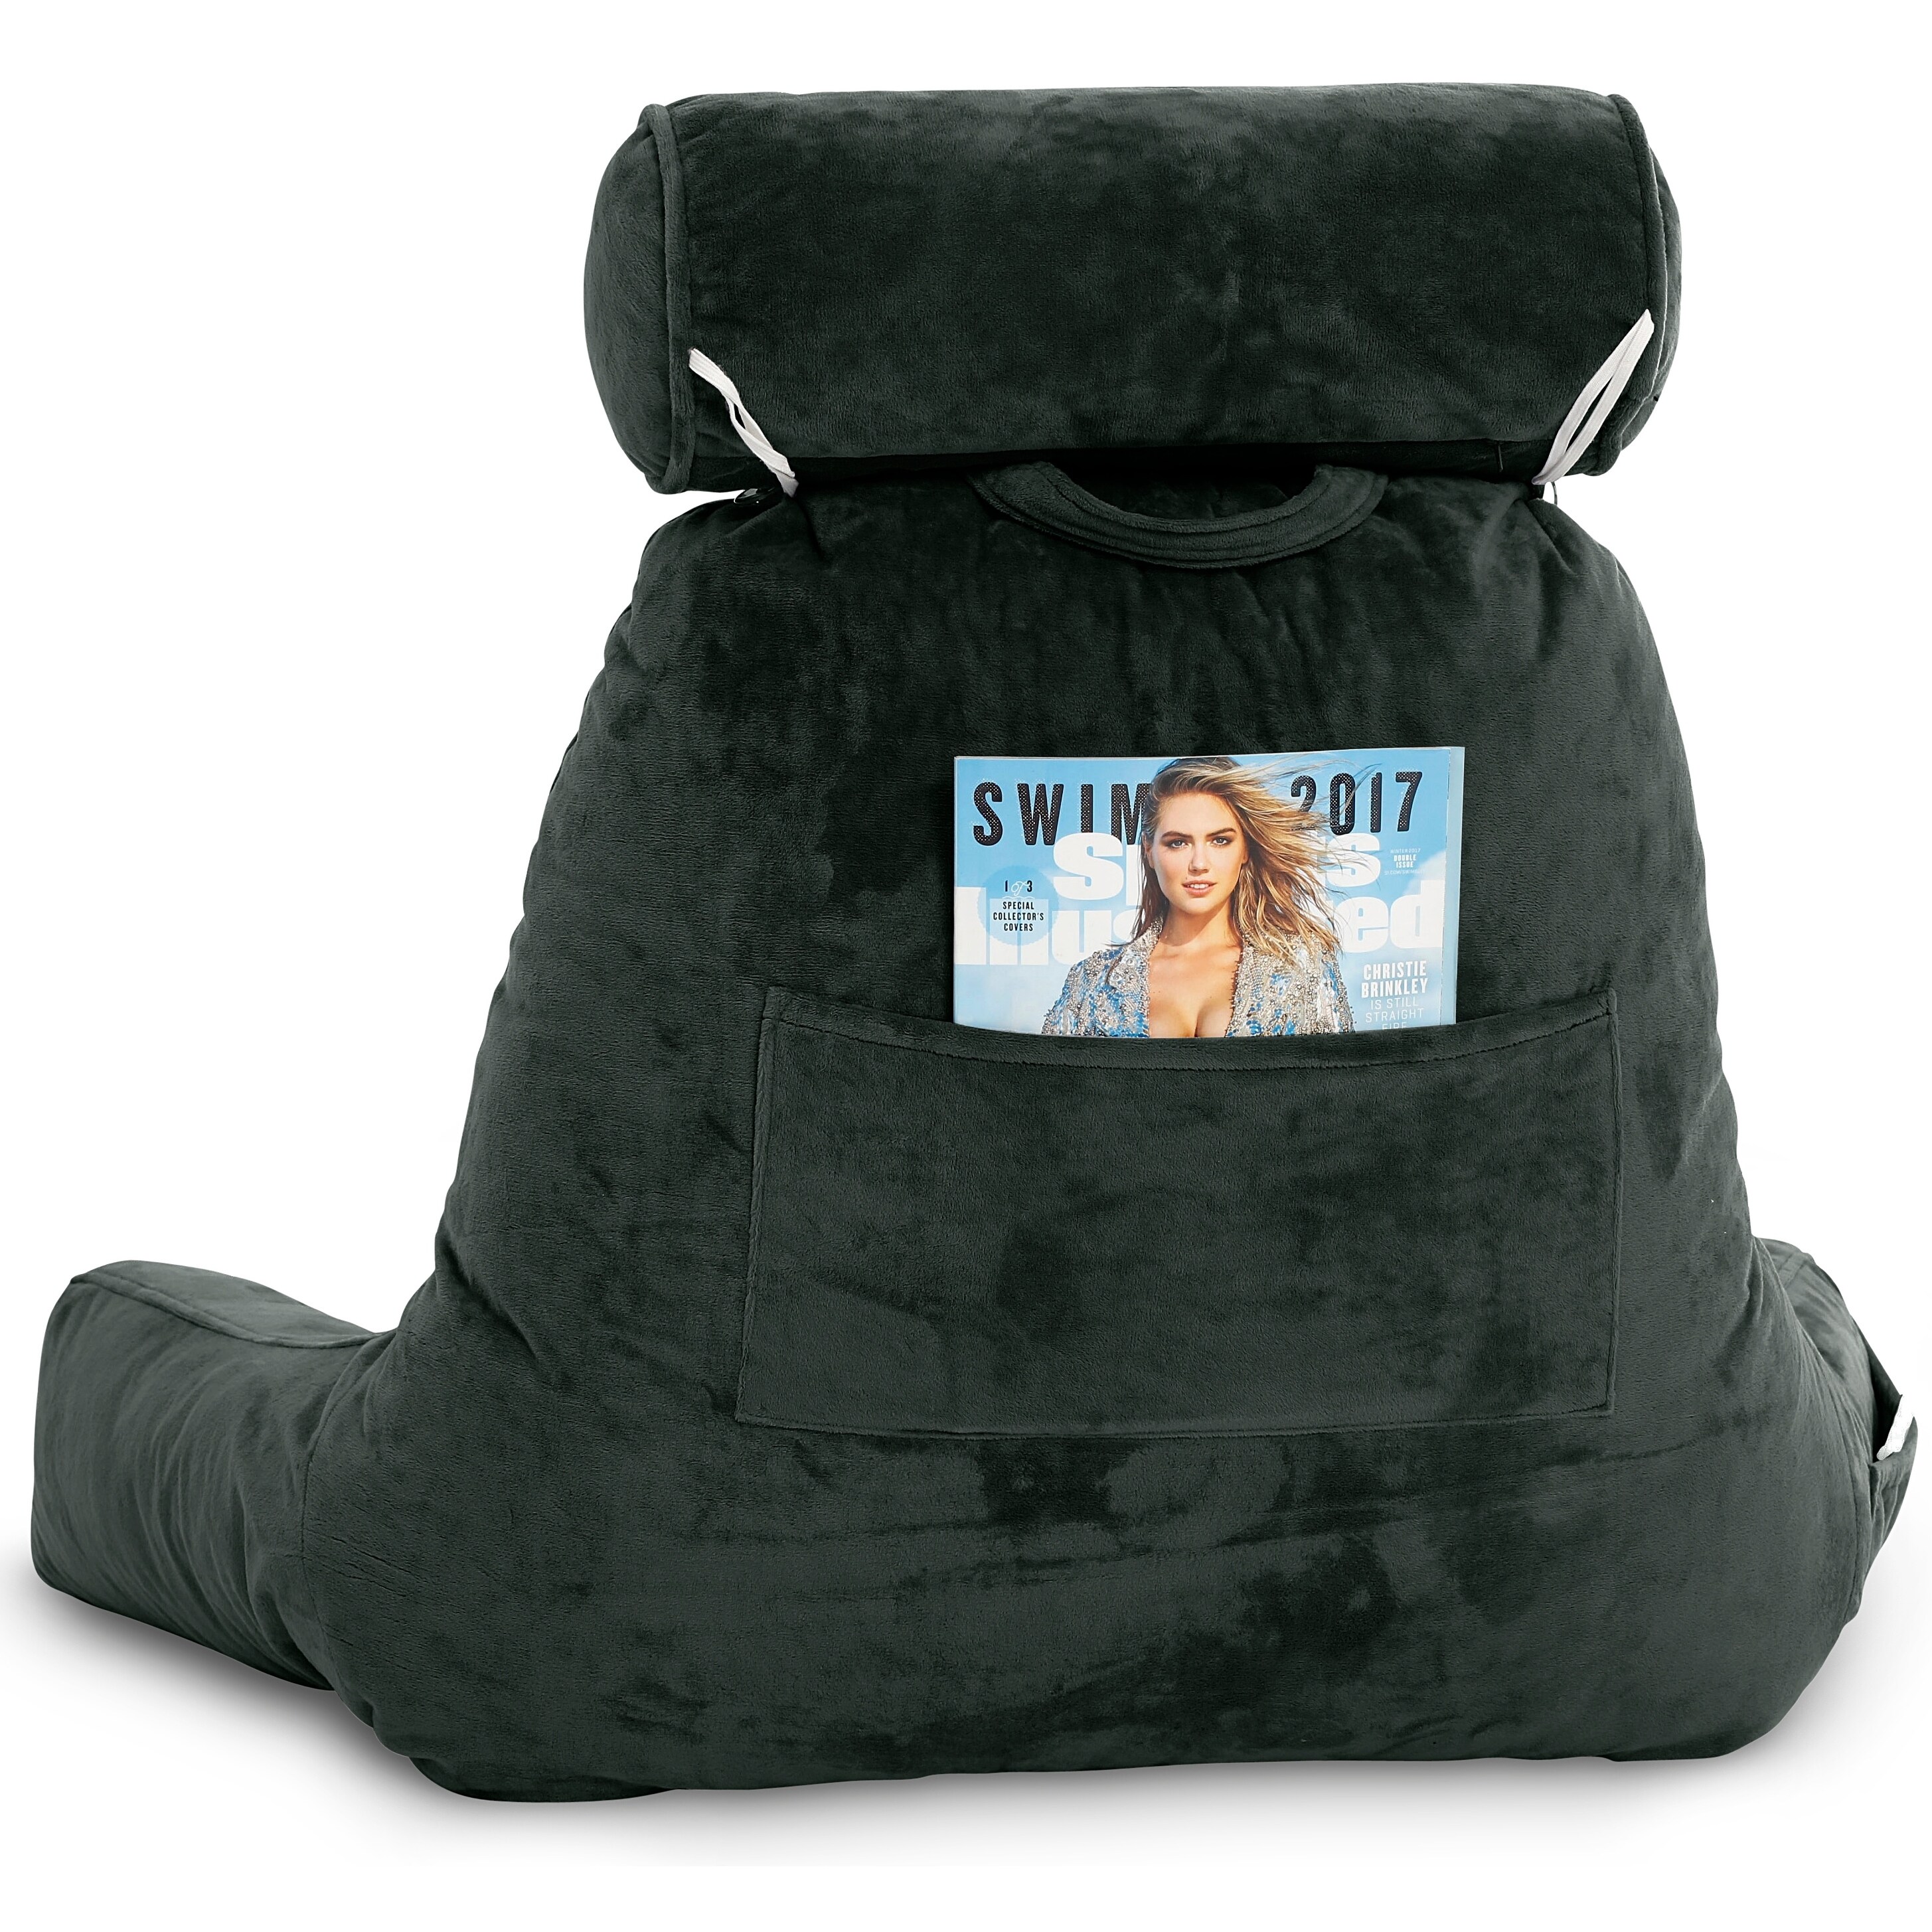 https://ak1.ostkcdn.com/images/products/30264505/Husband-Pillow-Bedrest-Reading-Support-Bed-Backrest-w-Arms-Shredded-Foam-Reading-Pillow-Bed-Rest-Pillow-97624e95-b279-4894-910d-d62971a2b3ca.jpg